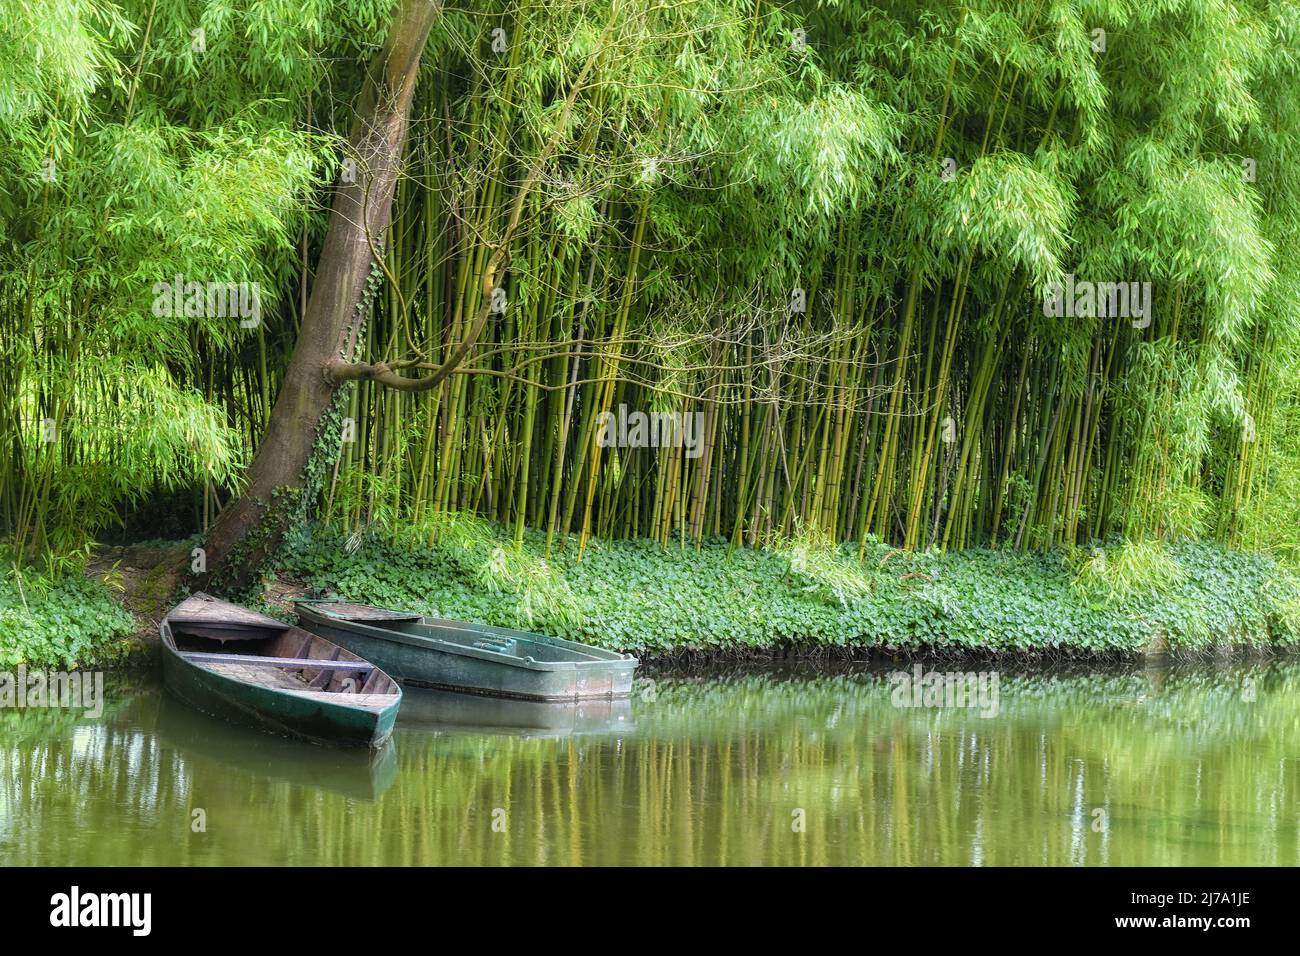 Jardin de bambou japonais dans le jardin aquatique de Claude Monet. Giverny, France Banque D'Images